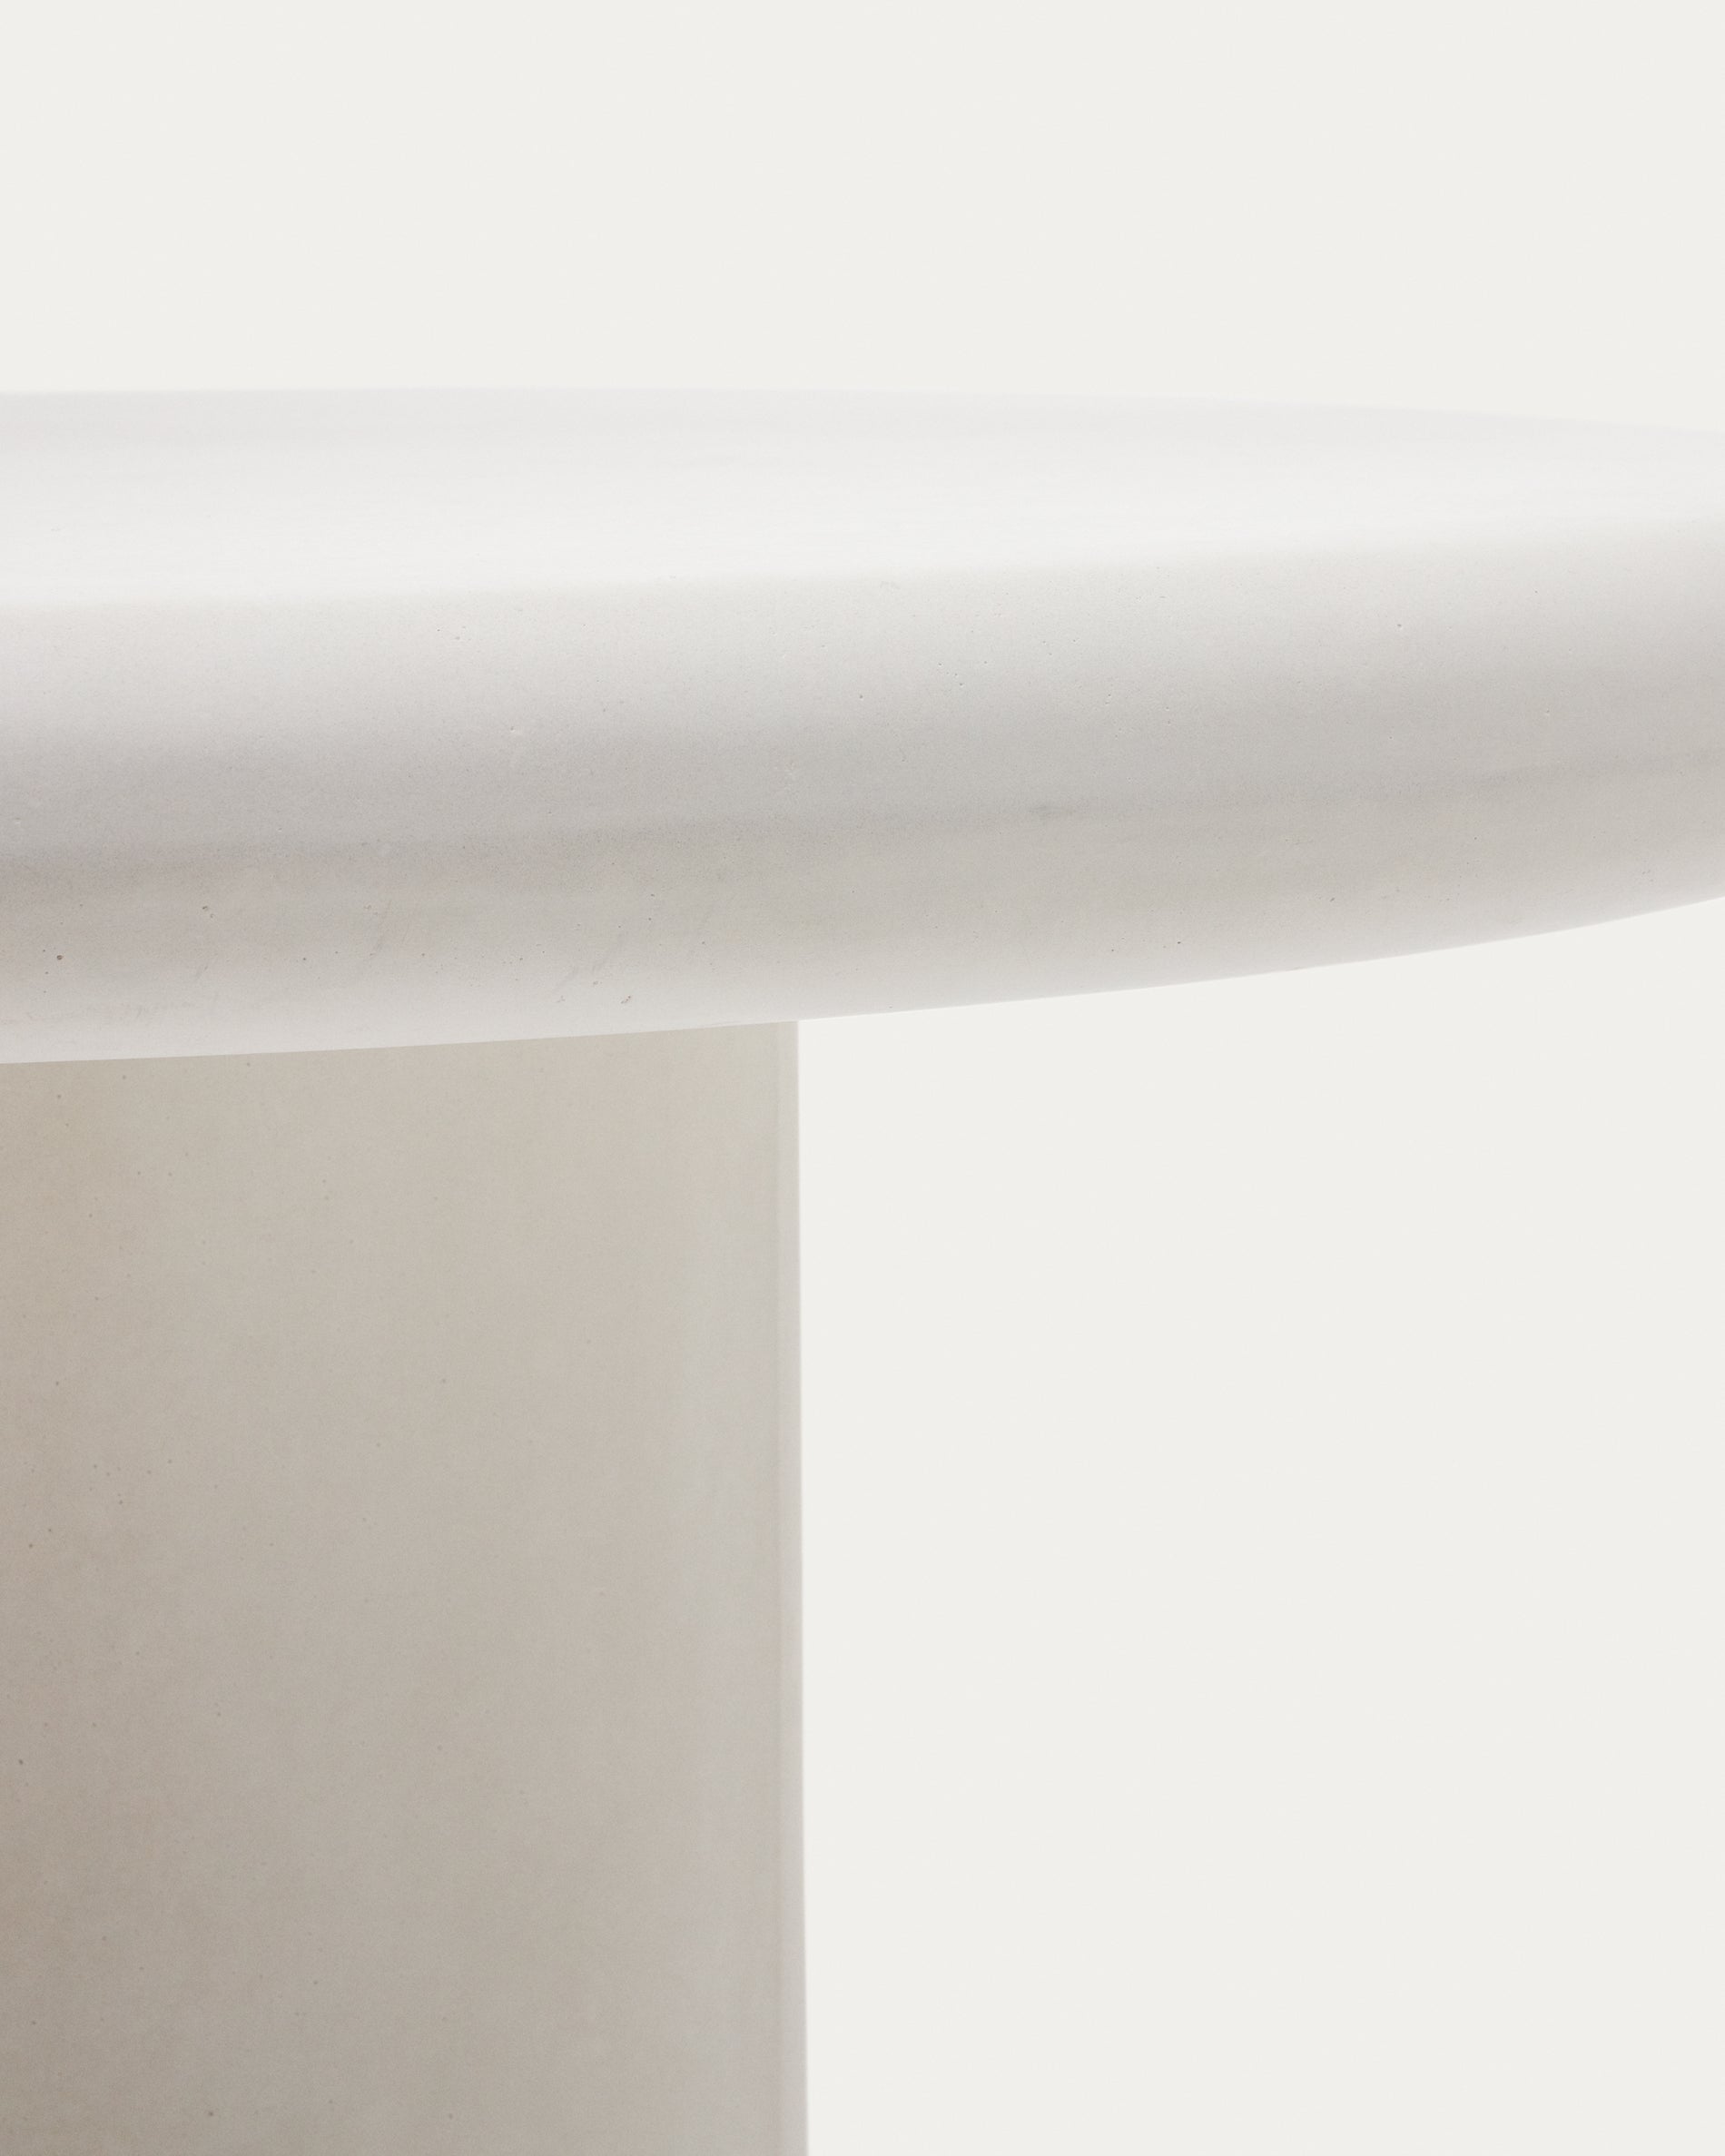 Addaia kerek asztal fehér cementből Ø90 cm